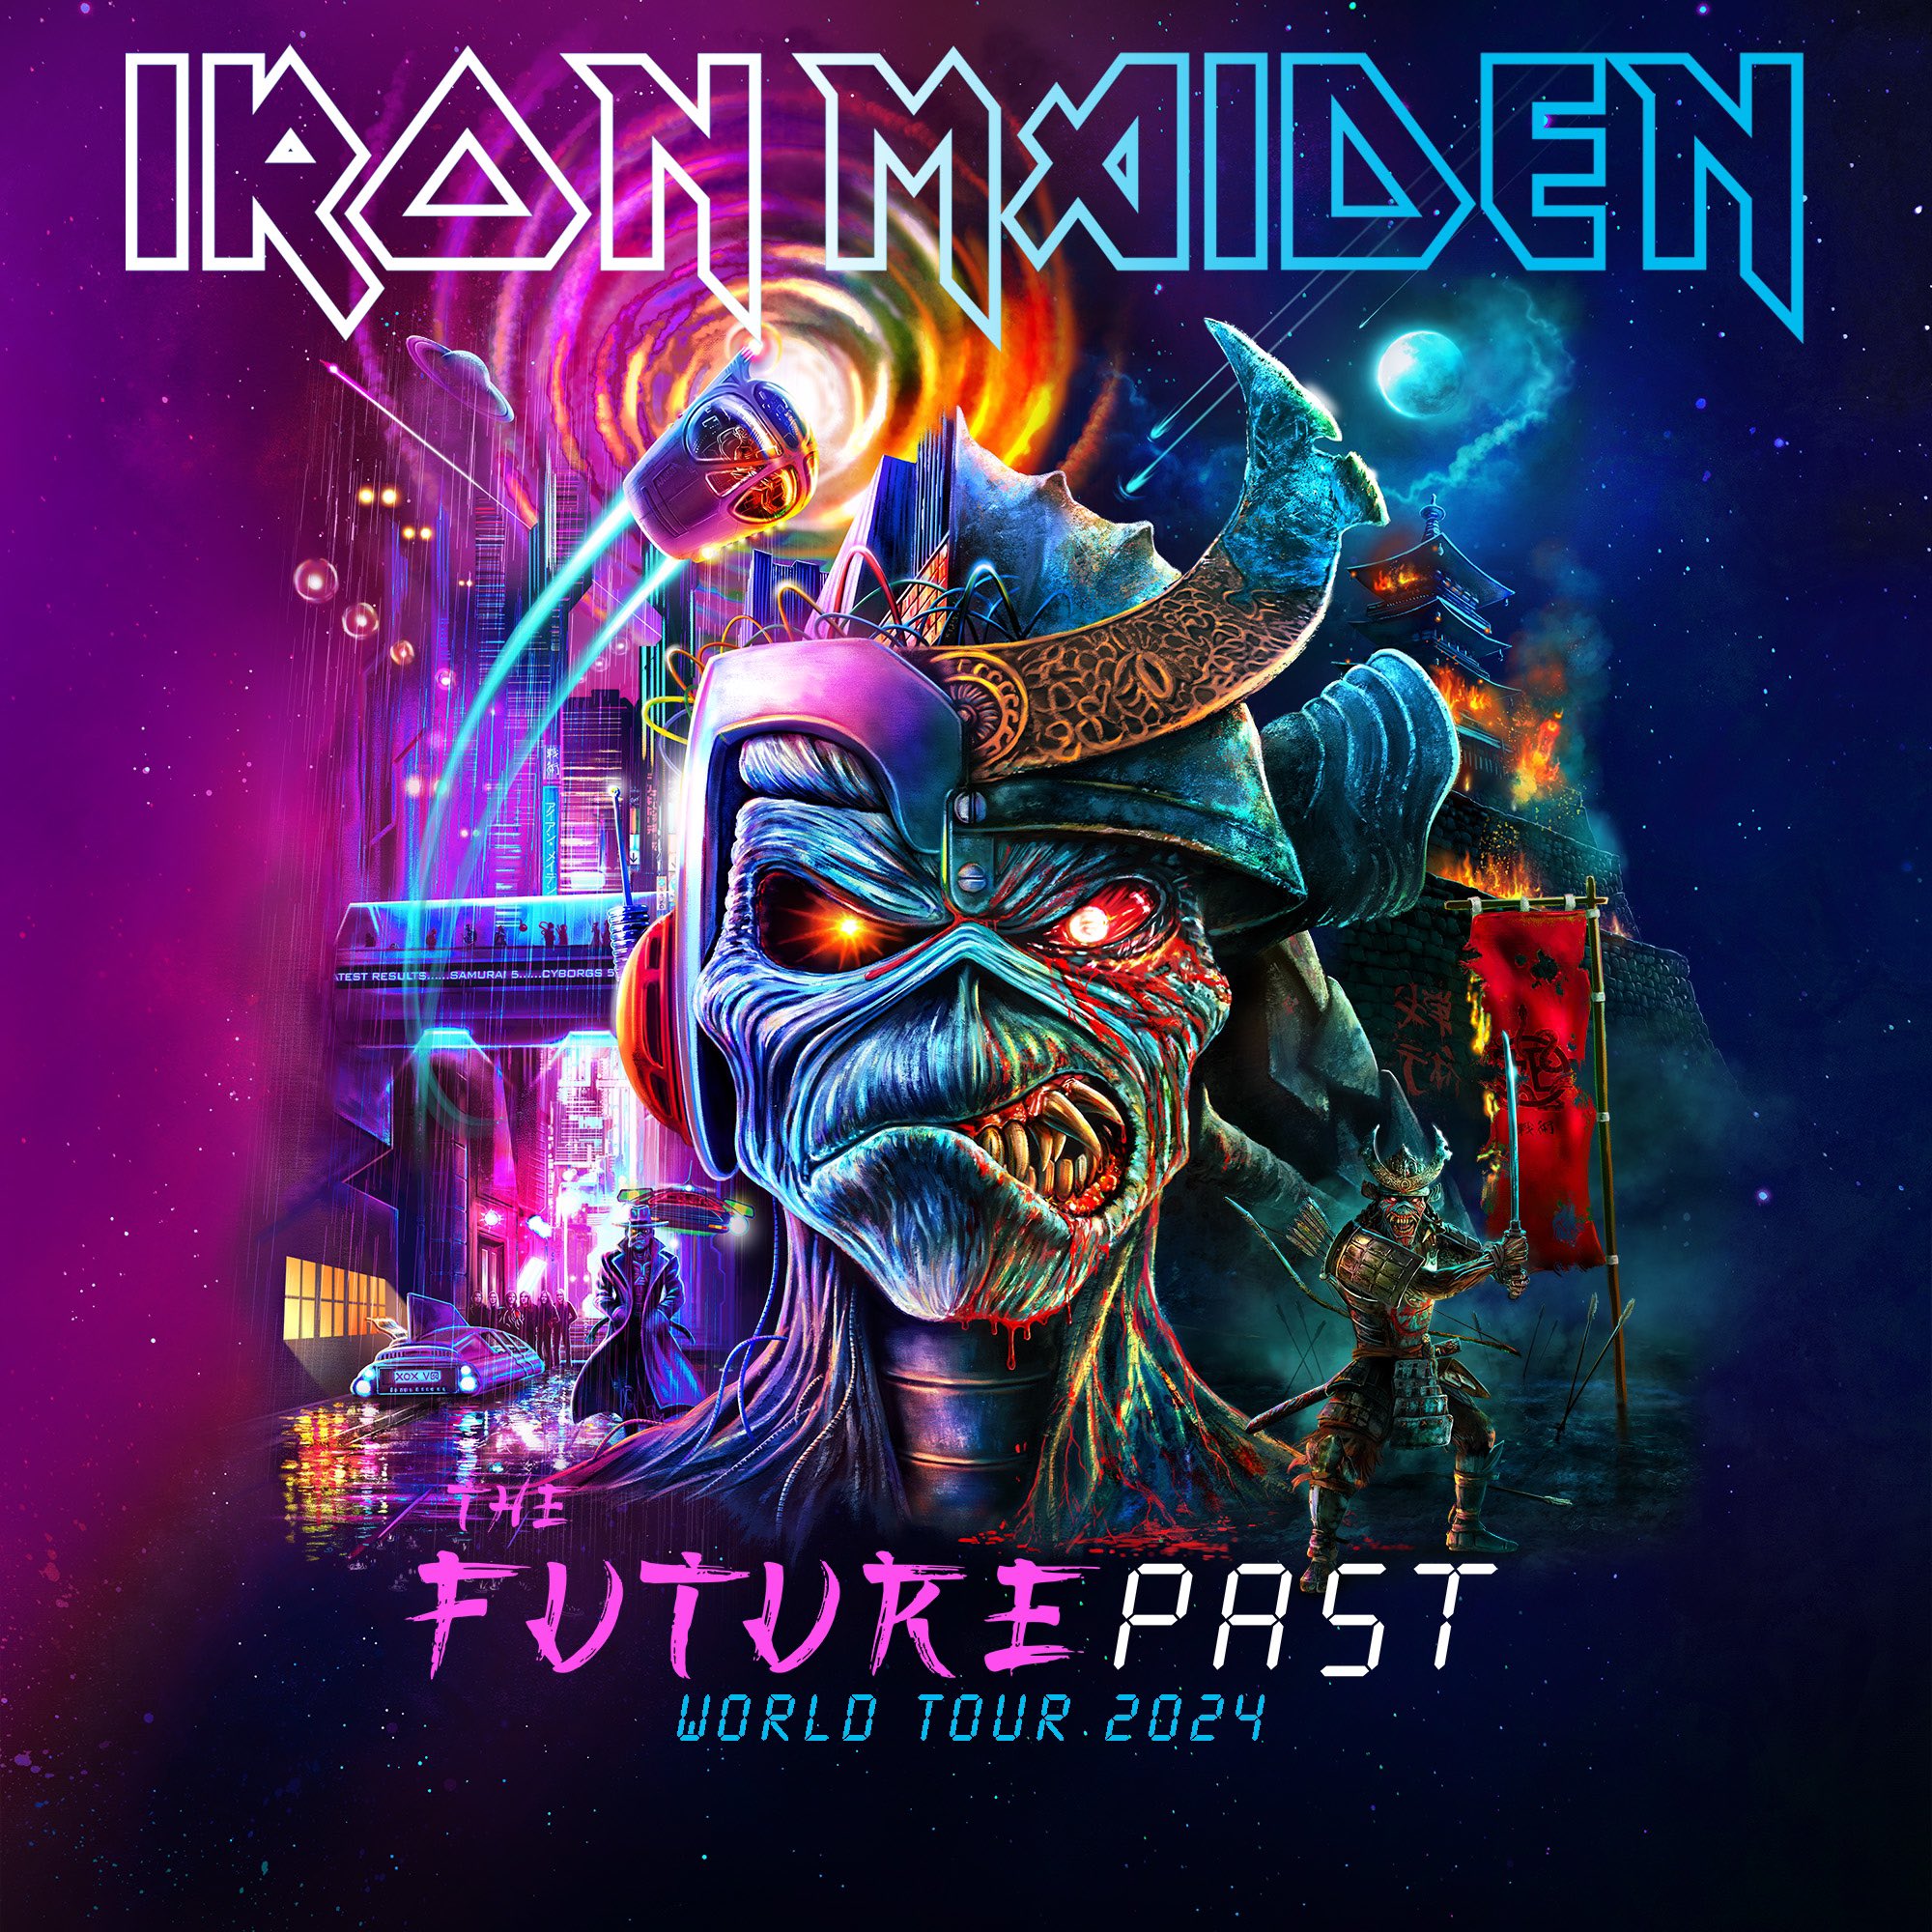 Iron Maiden anuncia primeiros shows da The Future Past World Tour 2024